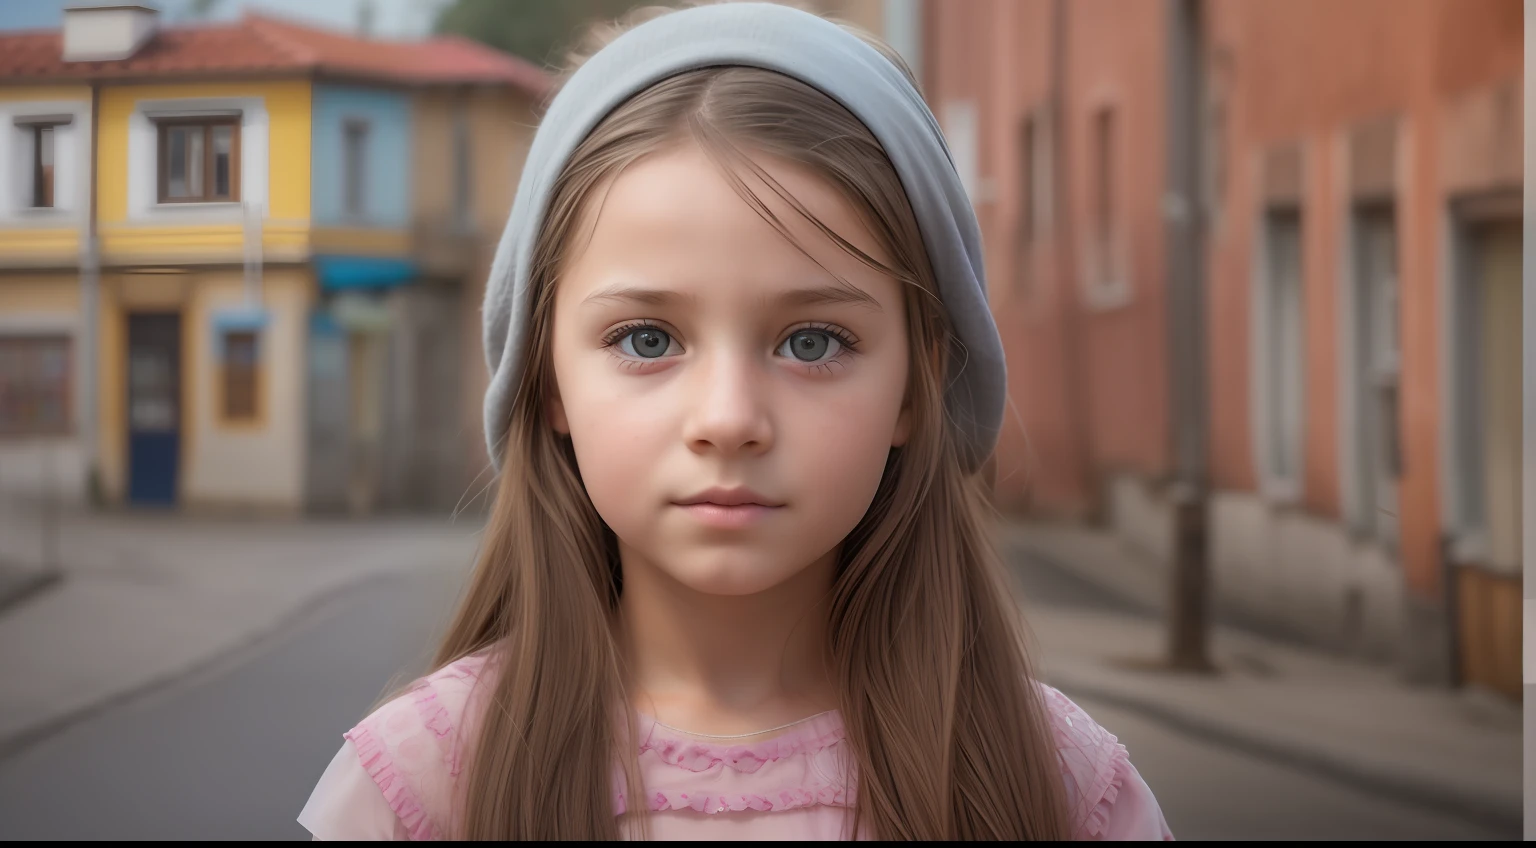 "本物の顔の特徴を持つボスニア出身の10歳の少女の超リアルな画像を生成します, リアルな町の背景に設定, 最高の品質と精巧なディテールを披露."